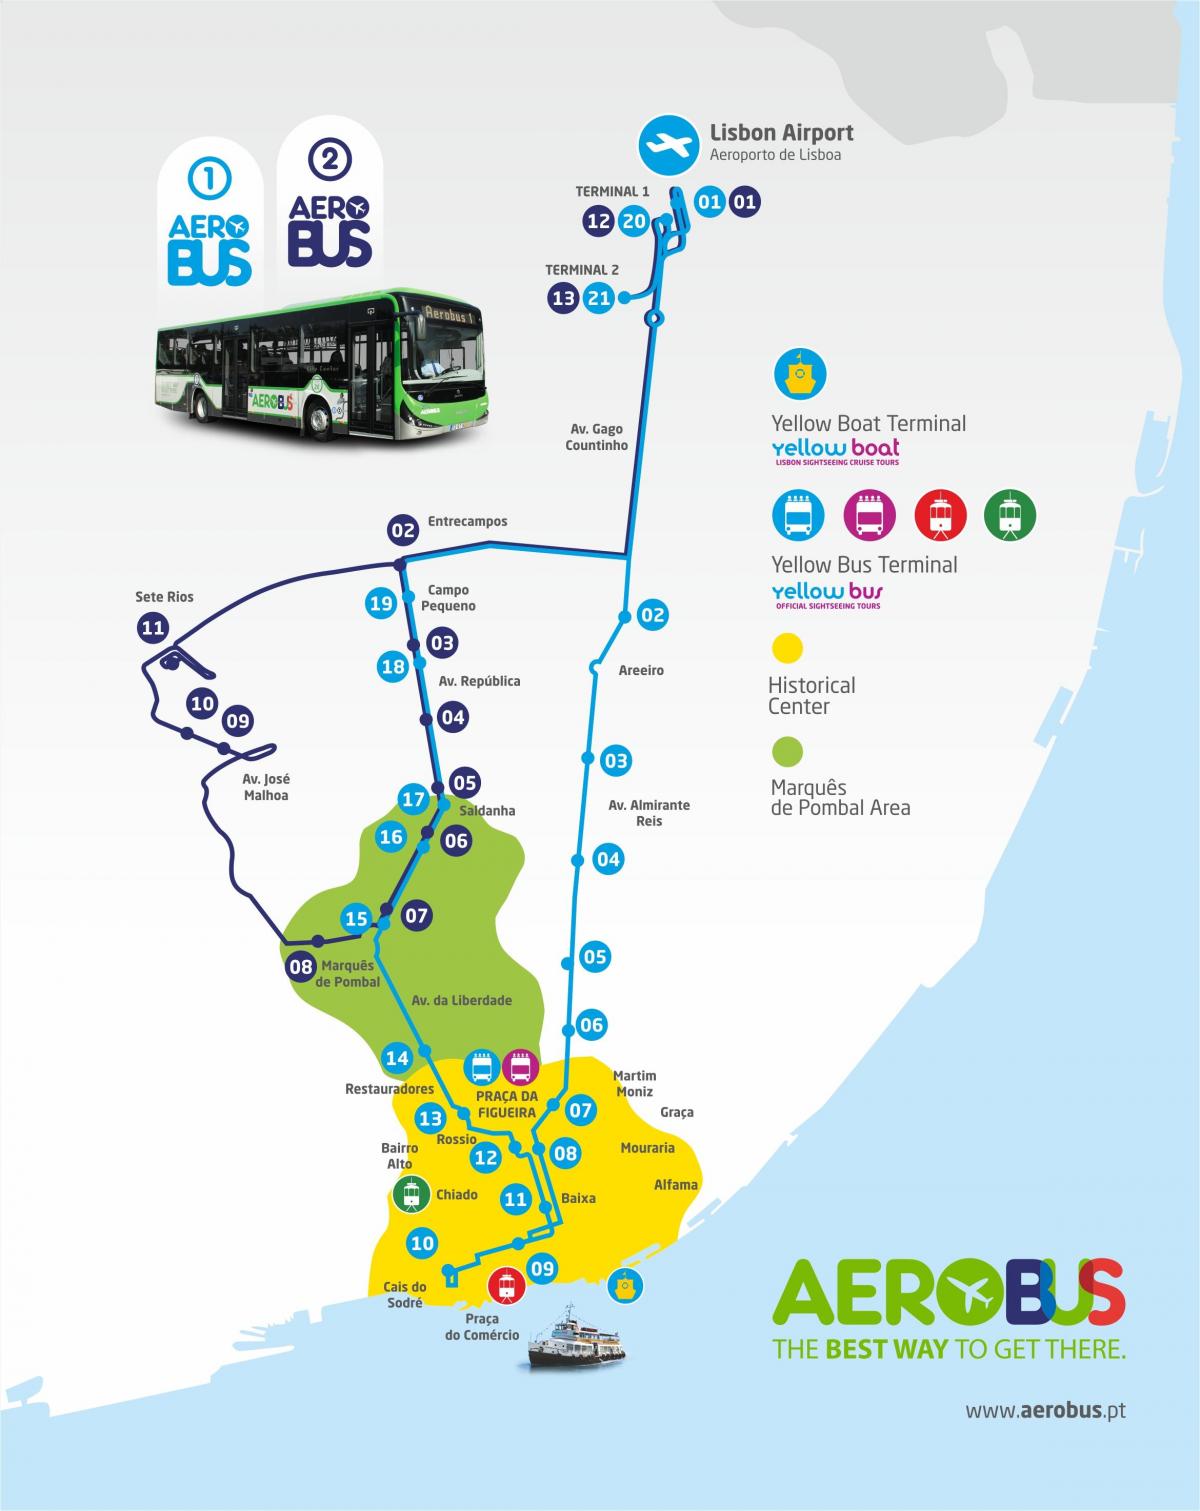 lisbon airport bus route map